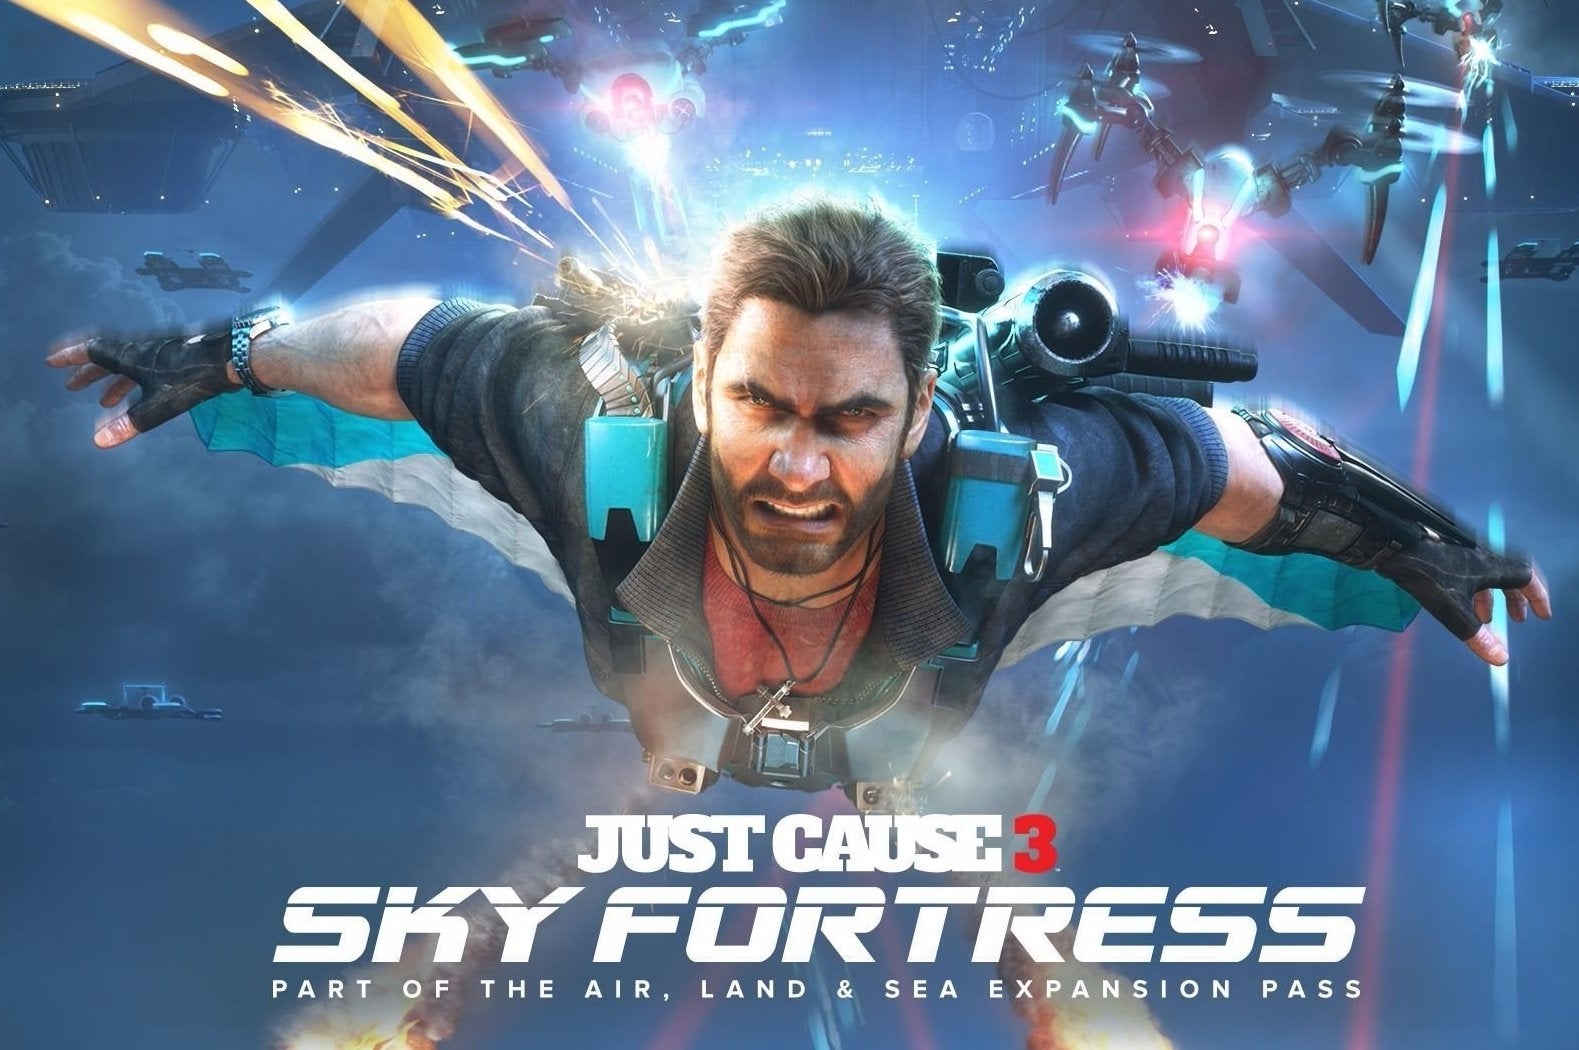 Imagem para Primeira expansão de Just Cause 3 chega em Março